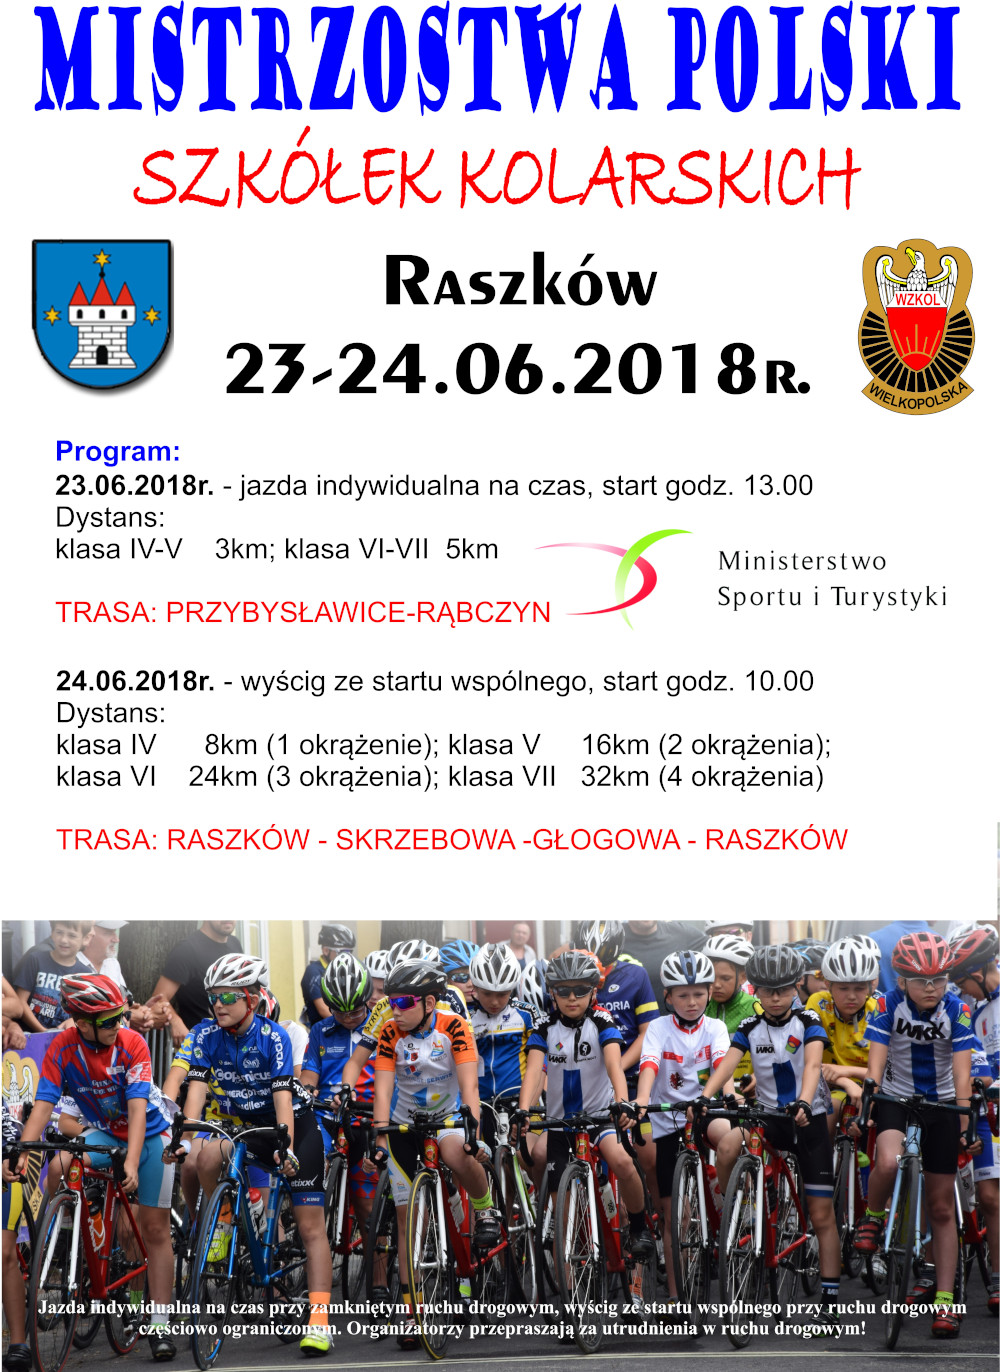 Mistrzostwa Polski Szkółek Kolarskich w kolarstwie szosowym – Raszków, 23-24.06.2018